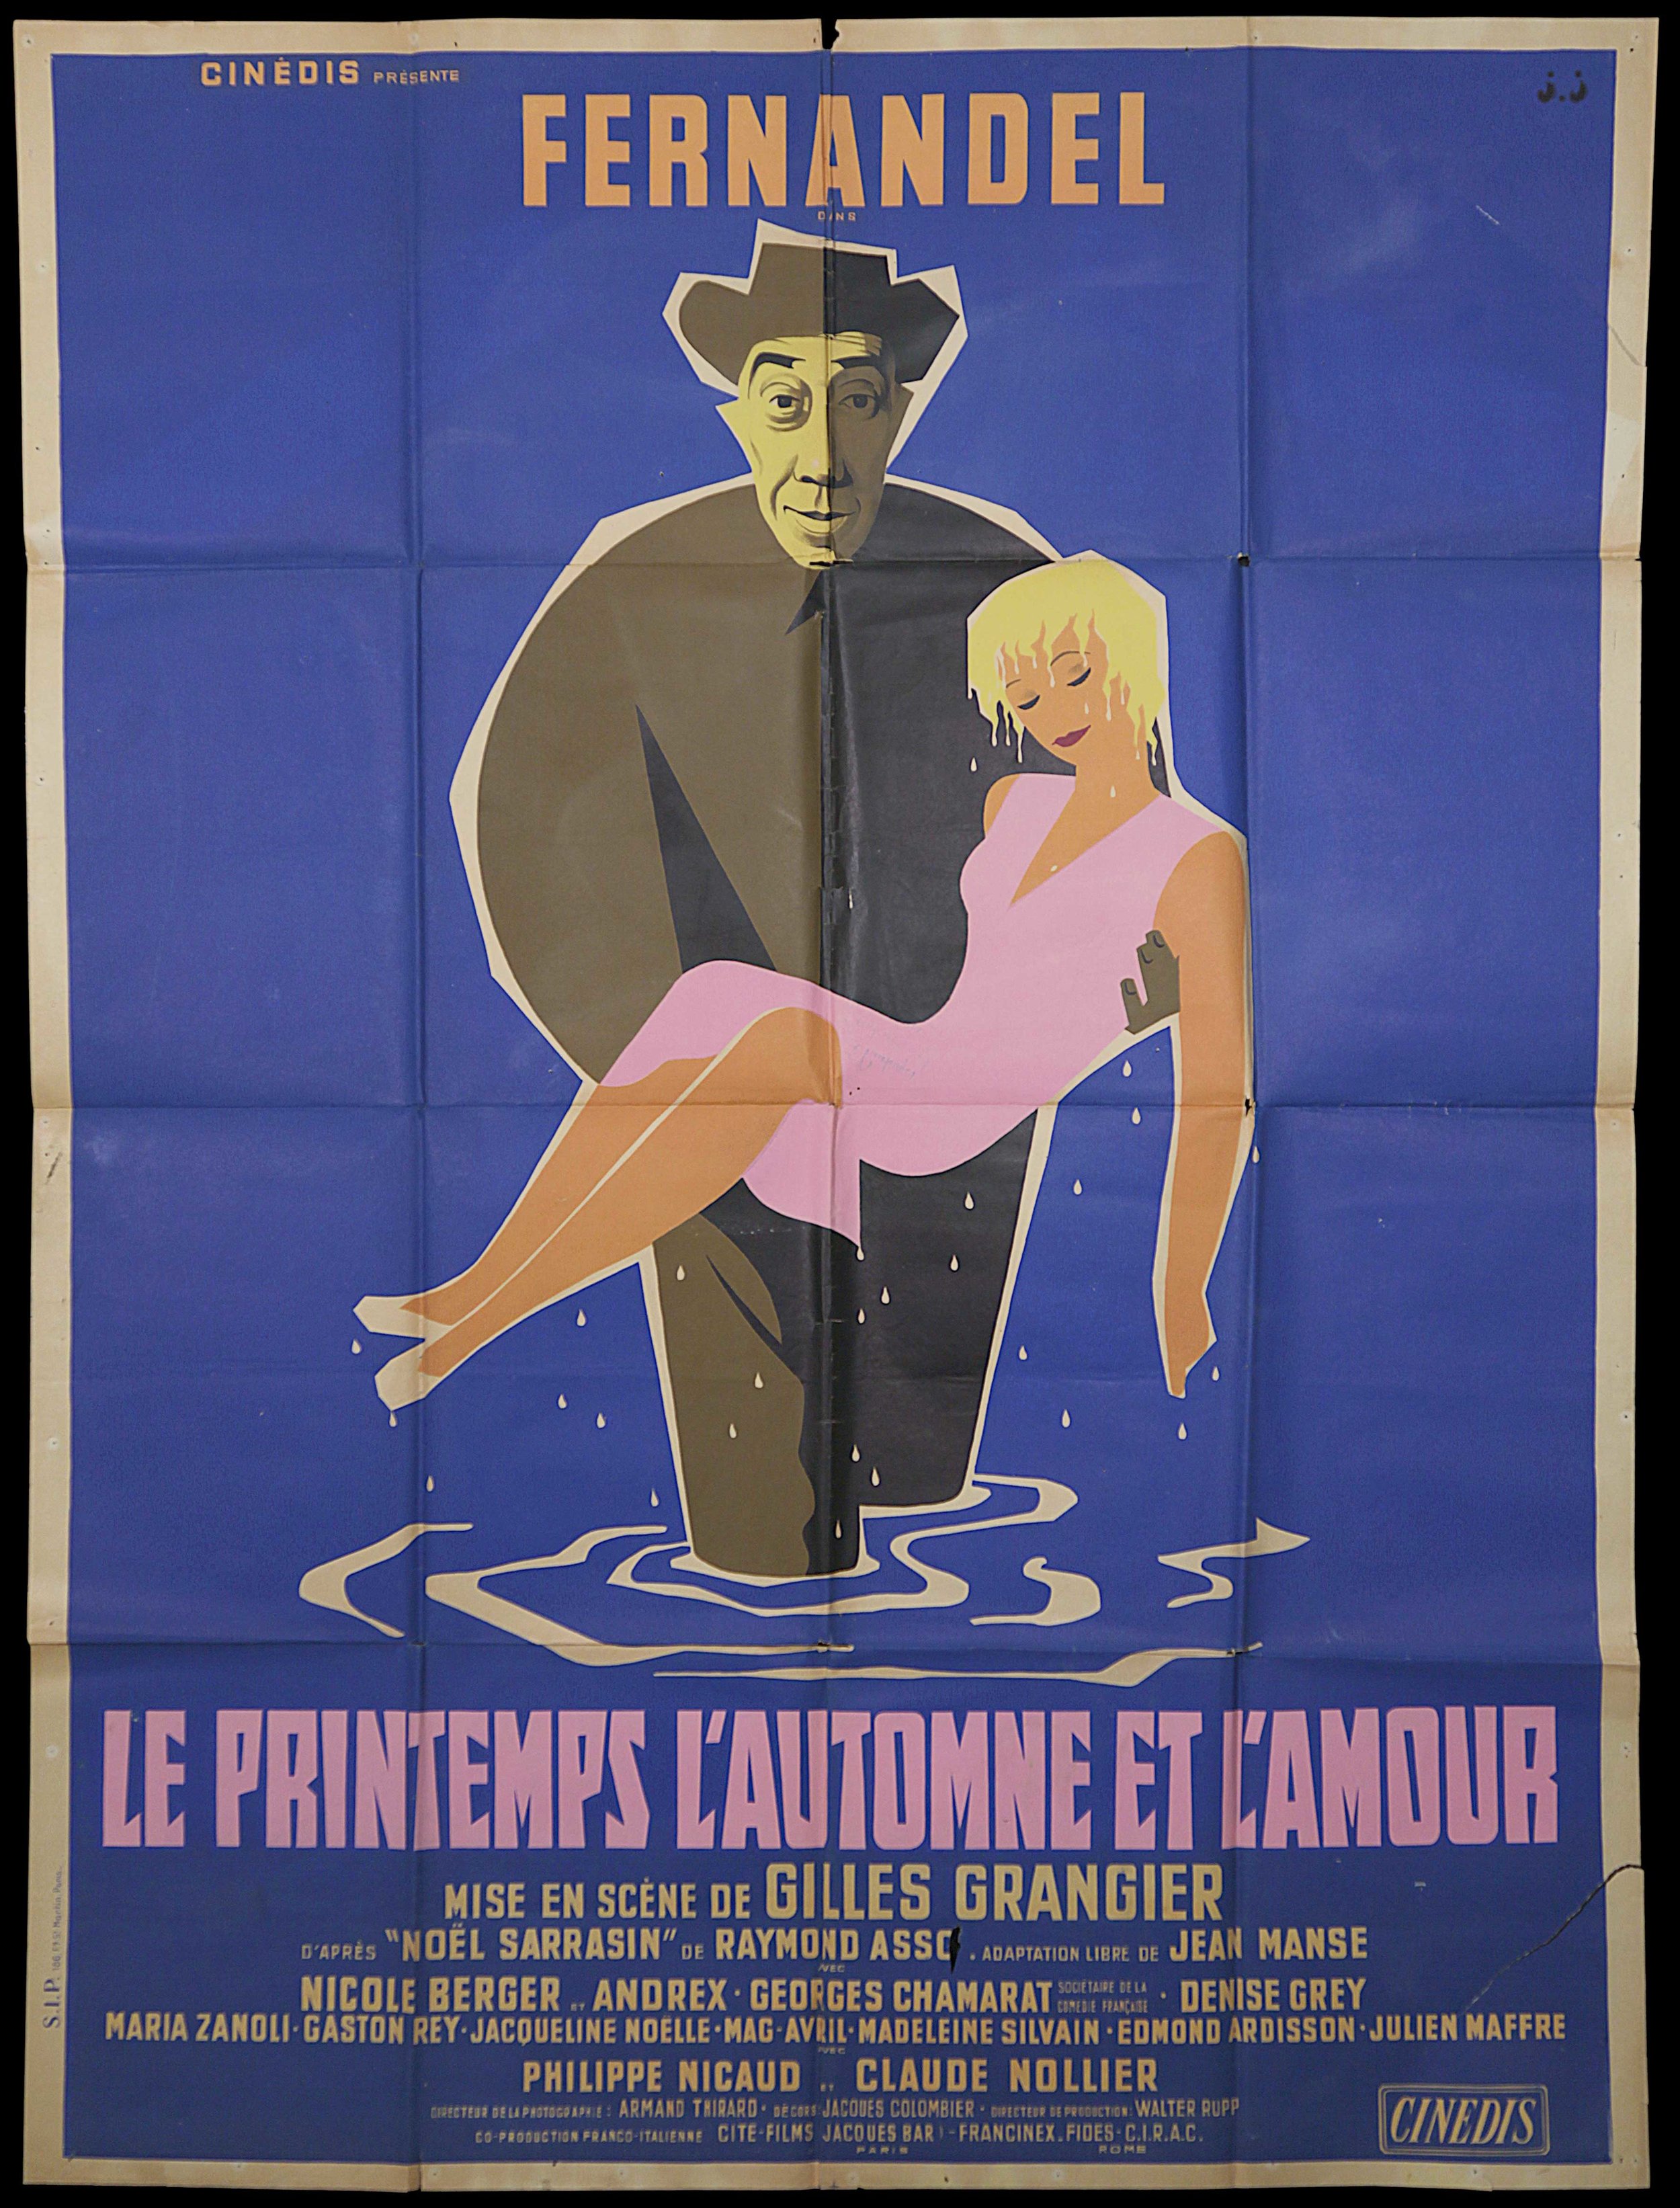 Fernadel in "Le Printemps L'Automme Et L'Amour (1955)